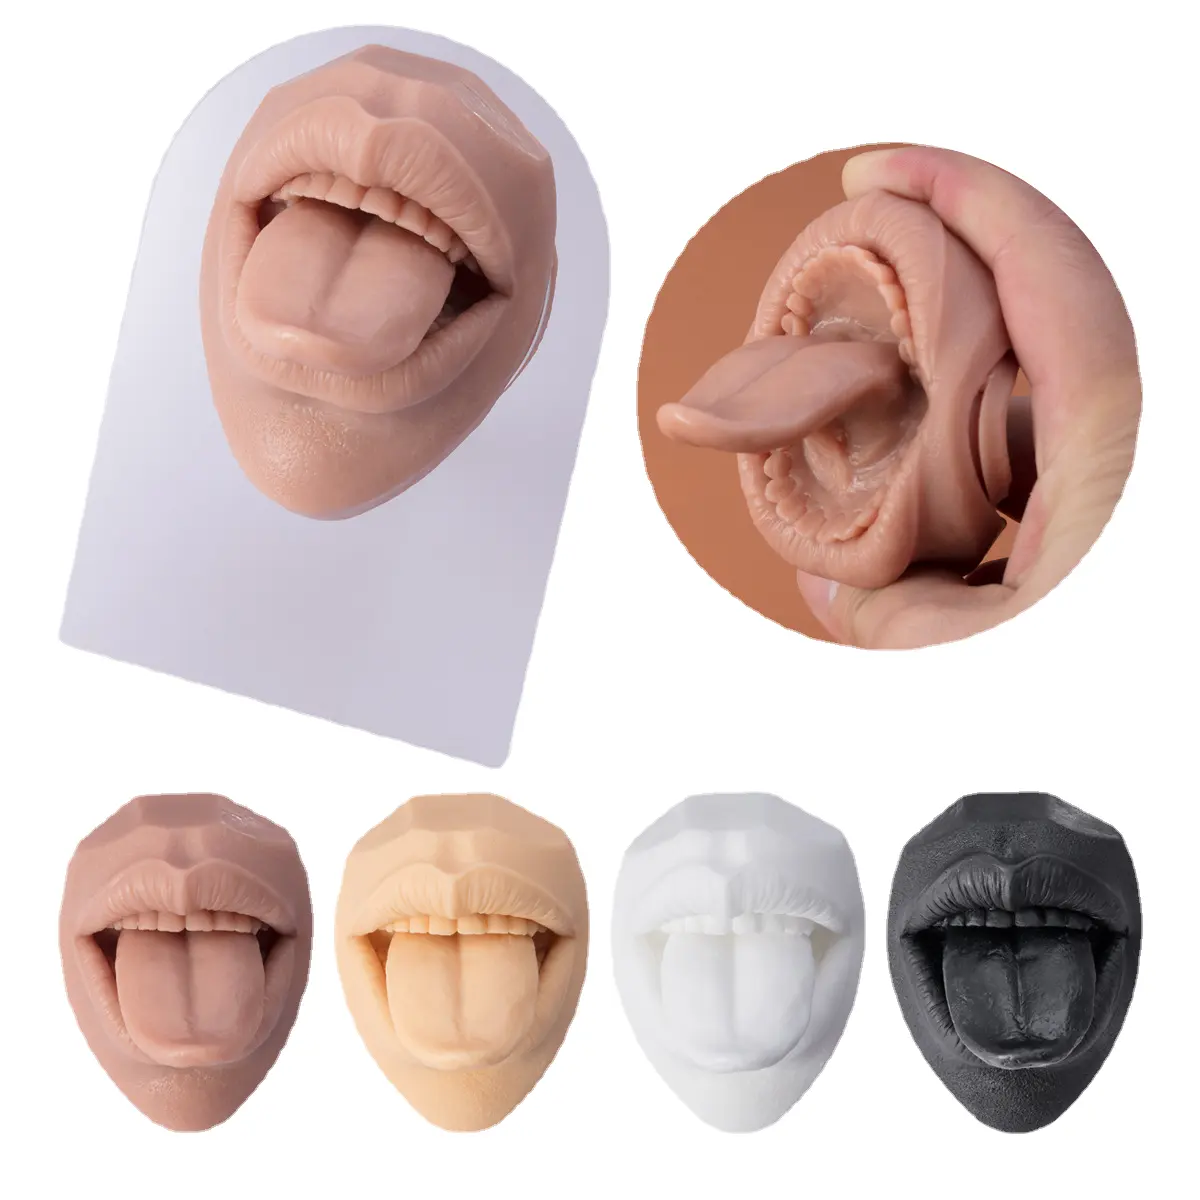 Visage silicone bouche piercing formation pose modèle lèvre langue affichage des ongles